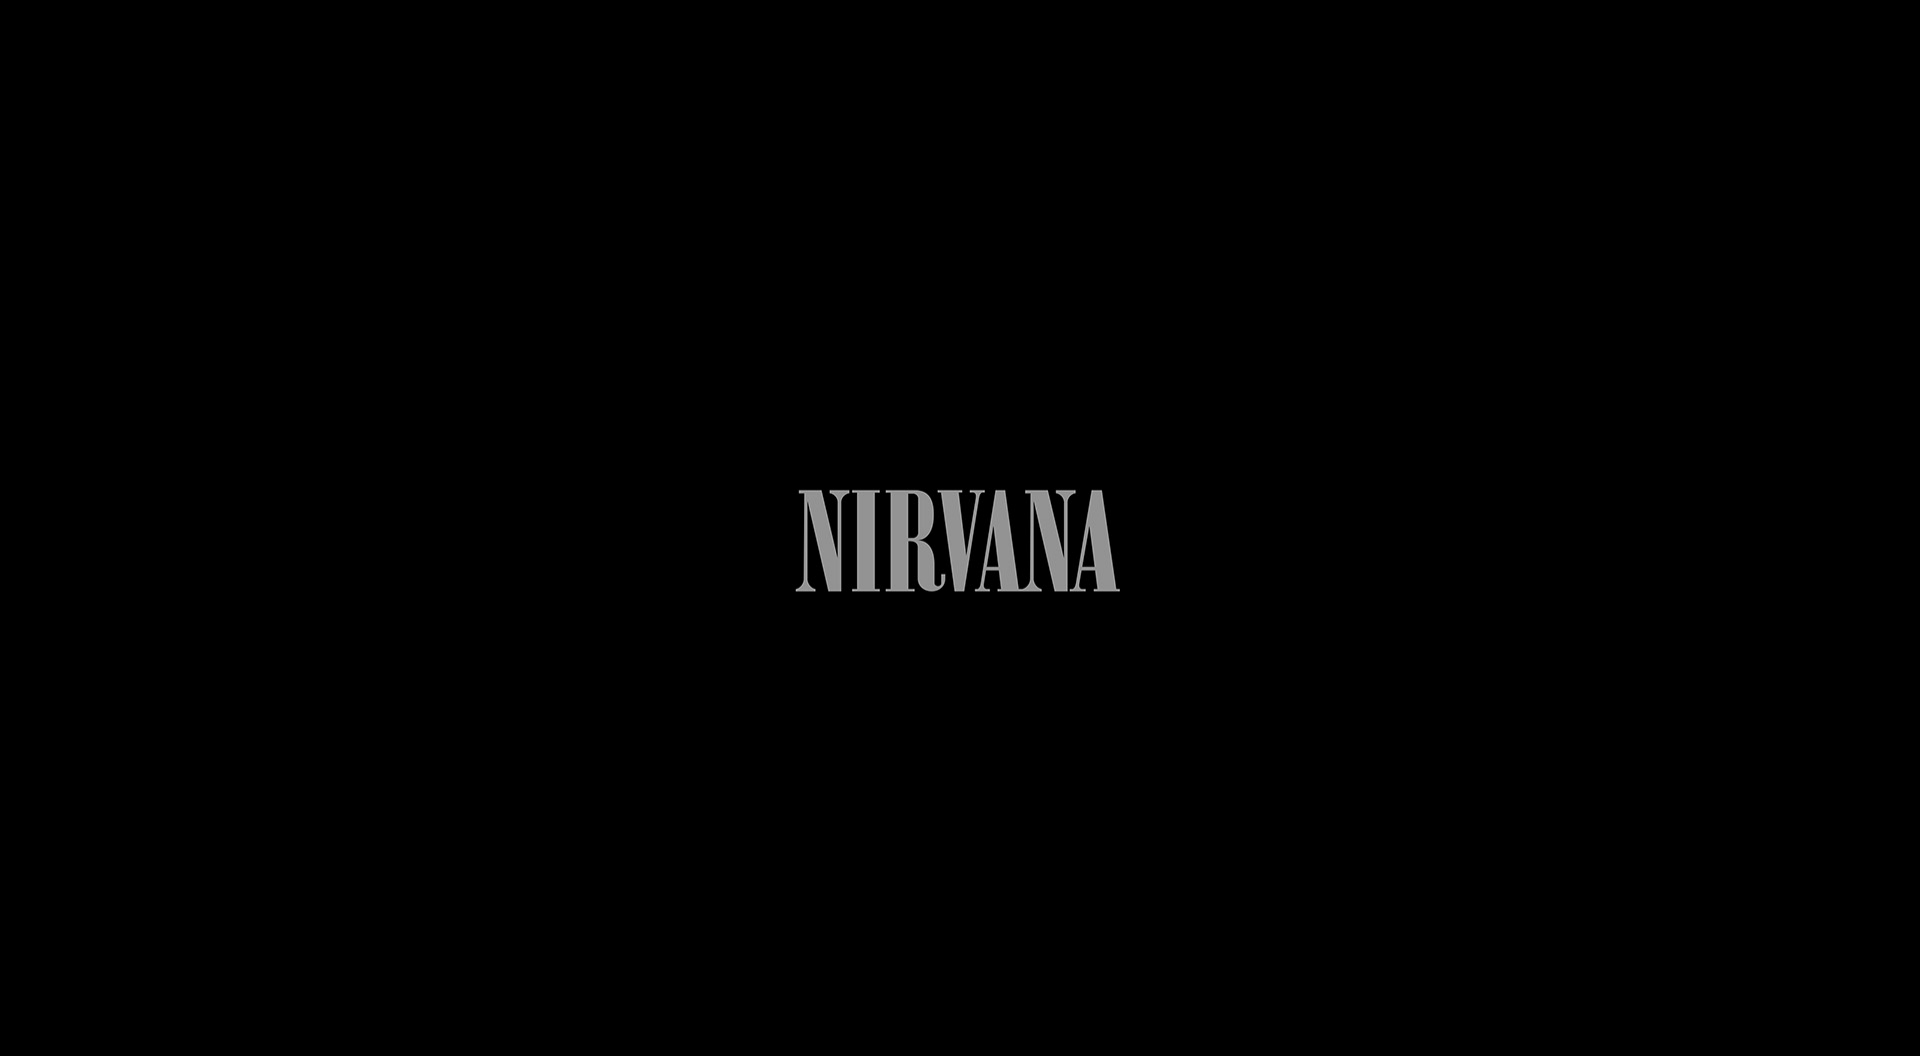 Nirvana Logo Monochrome 1920x1056